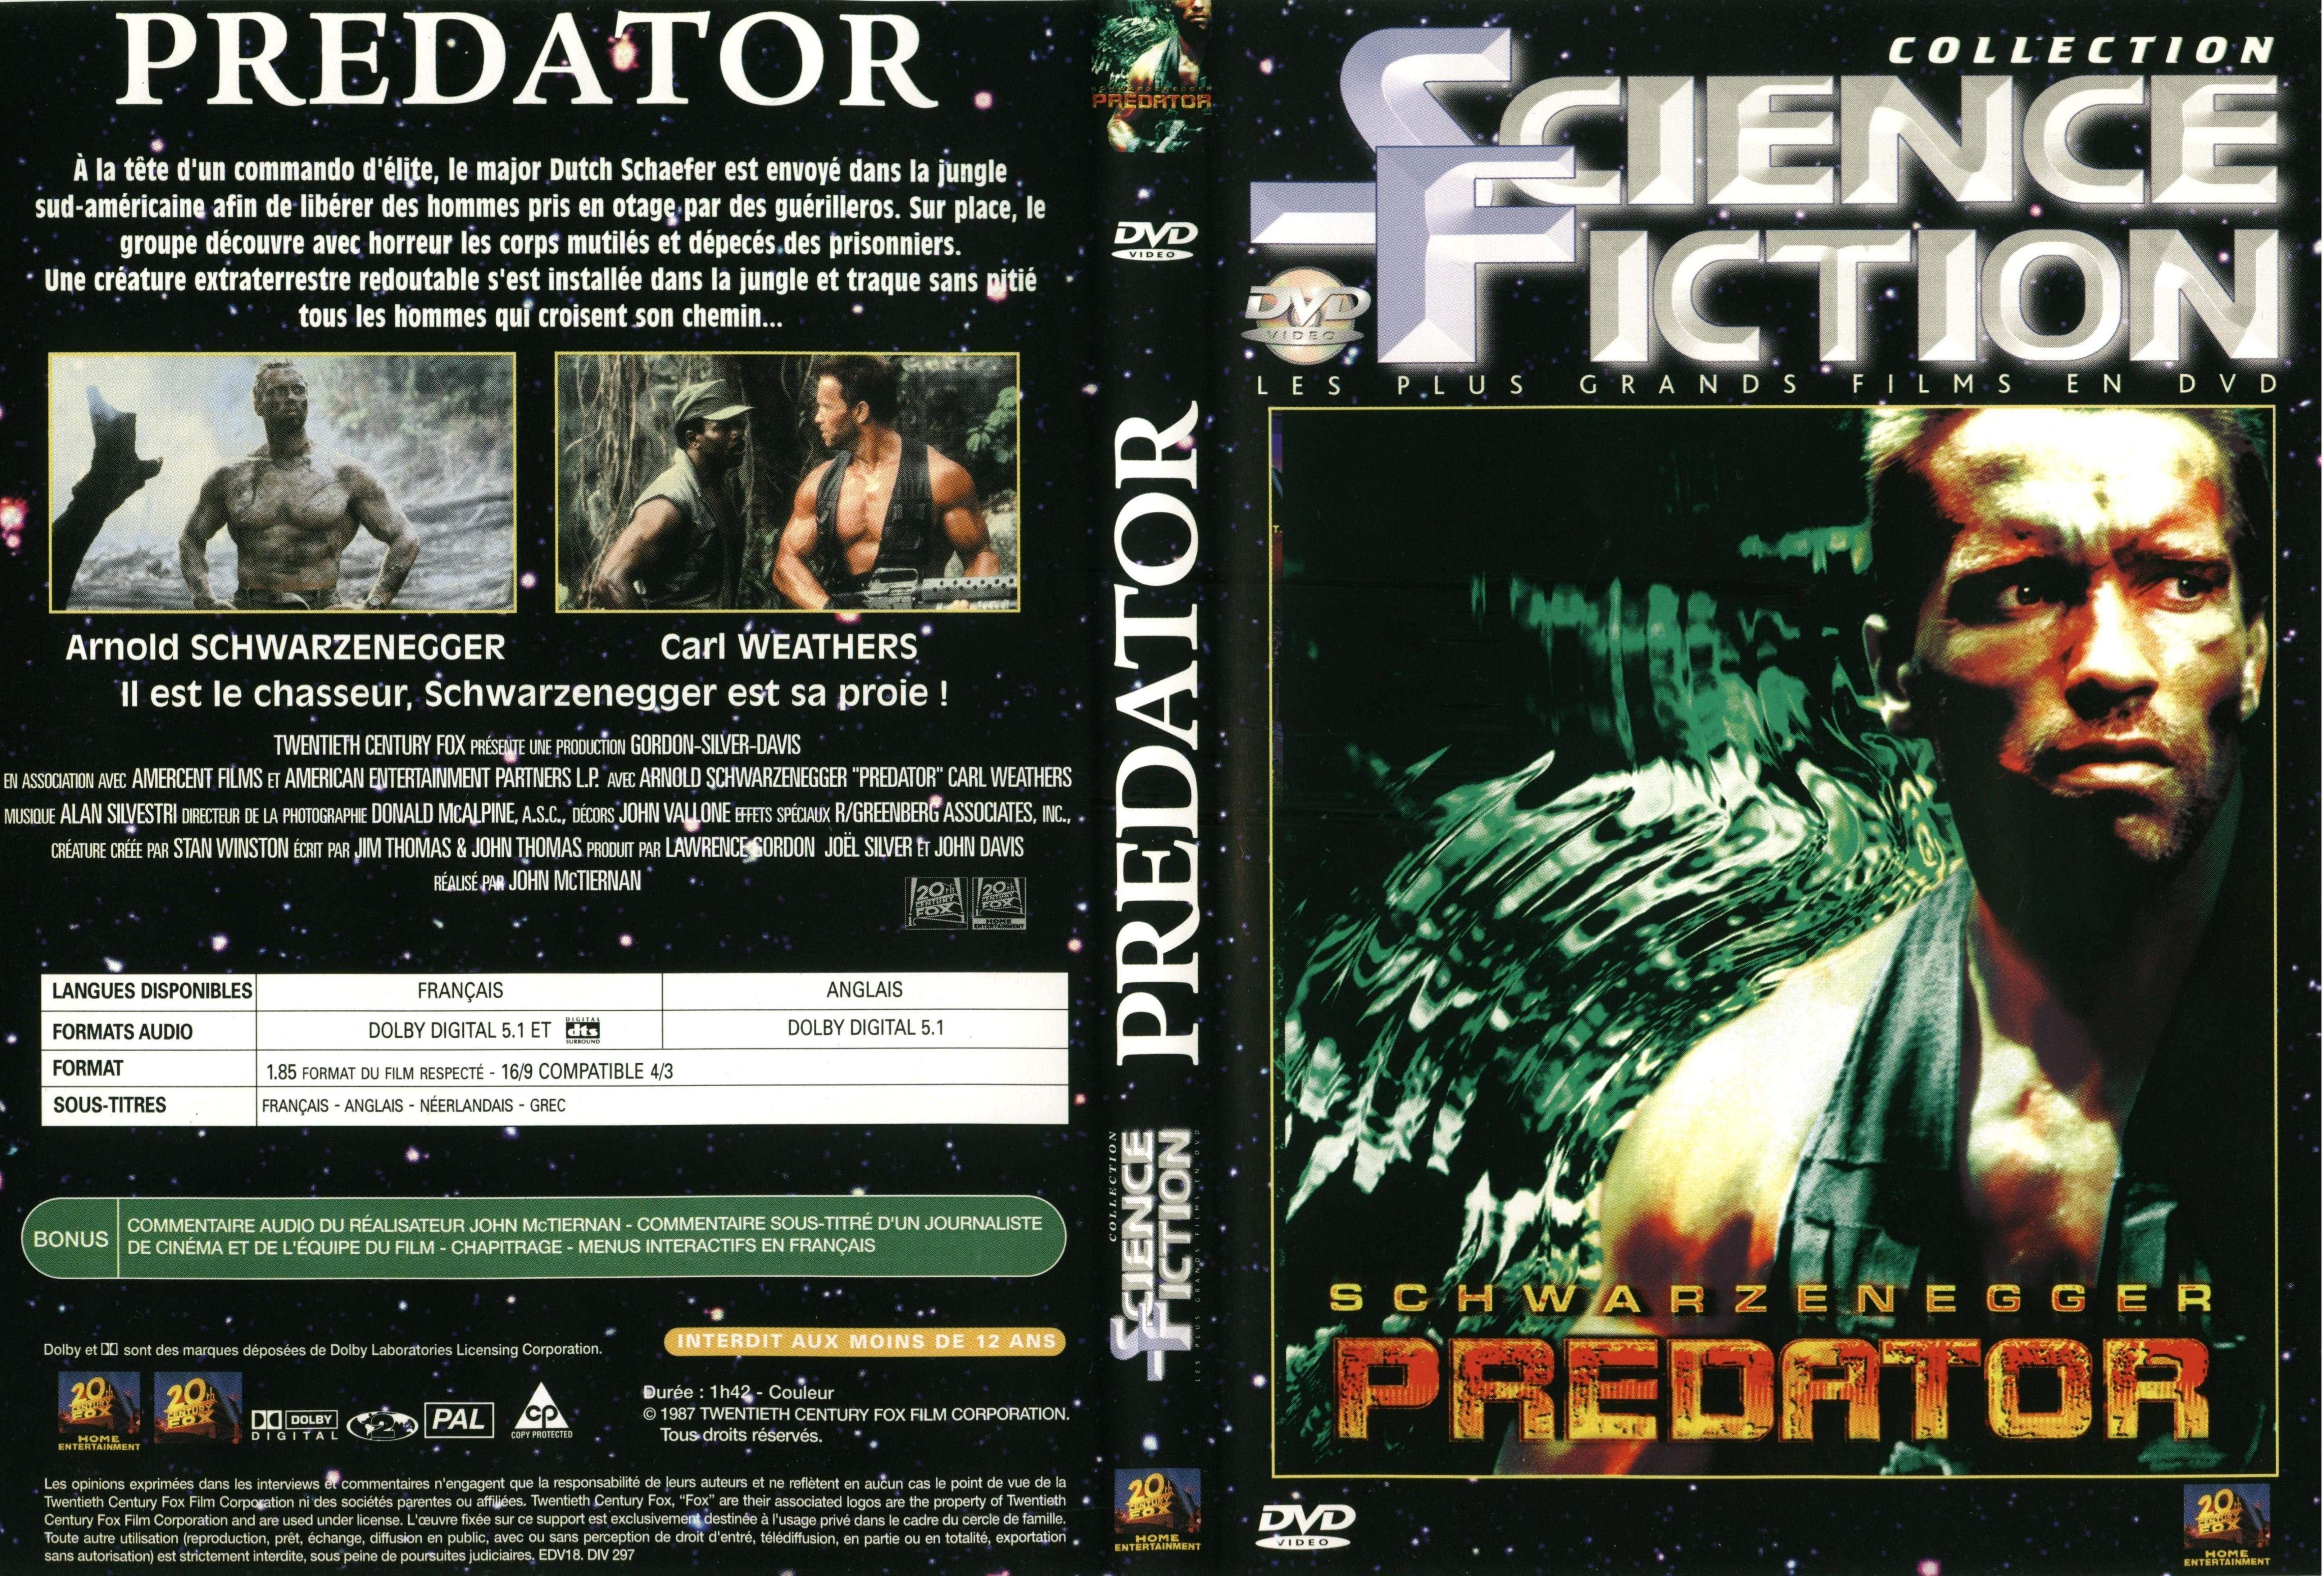 Jaquette DVD Predator v3